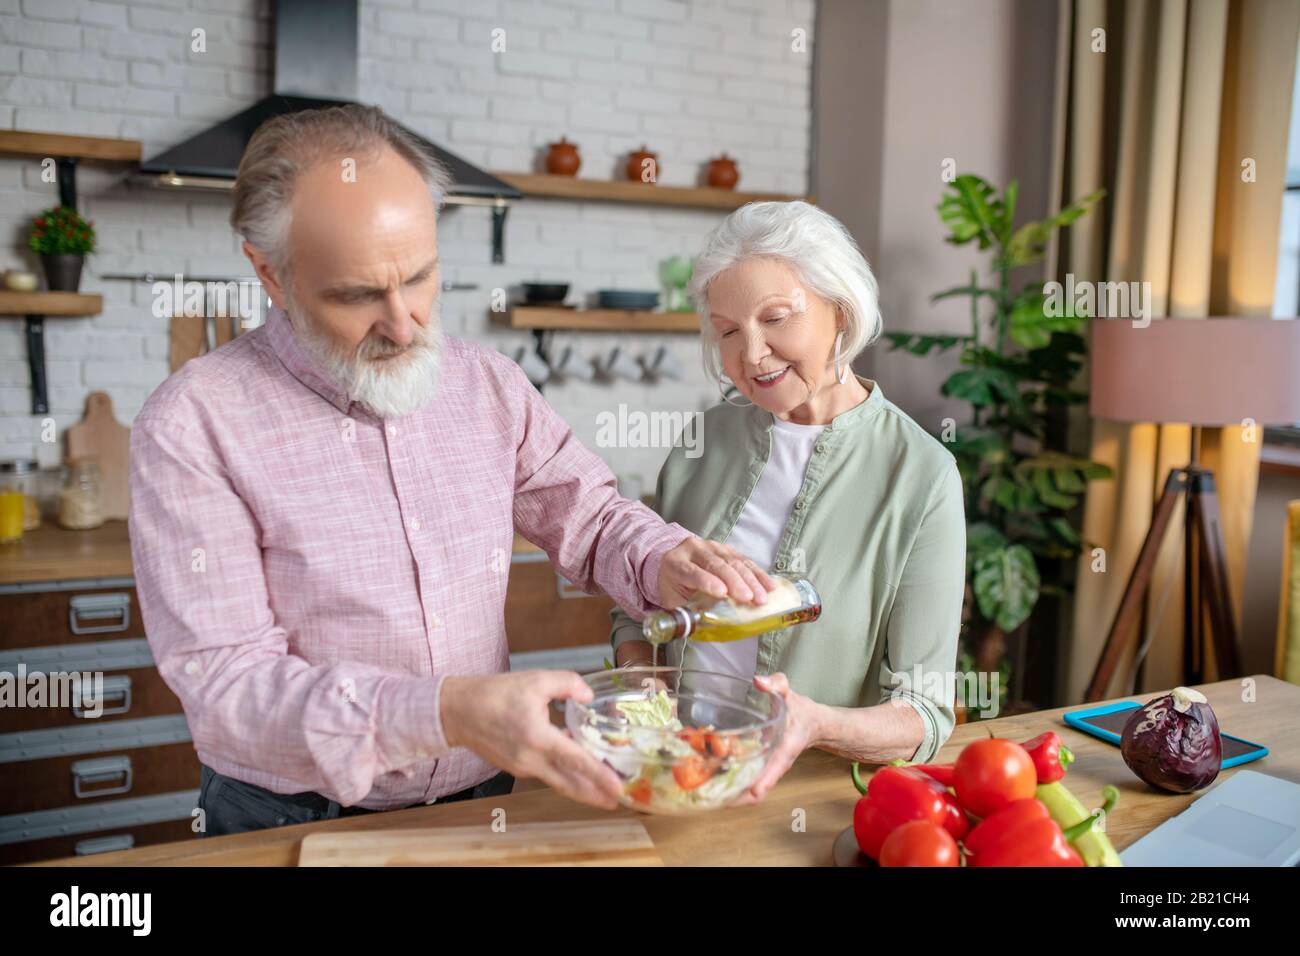 Las personas mayores cocinan juntos una ensalada sabrosa y saludable Foto de stock